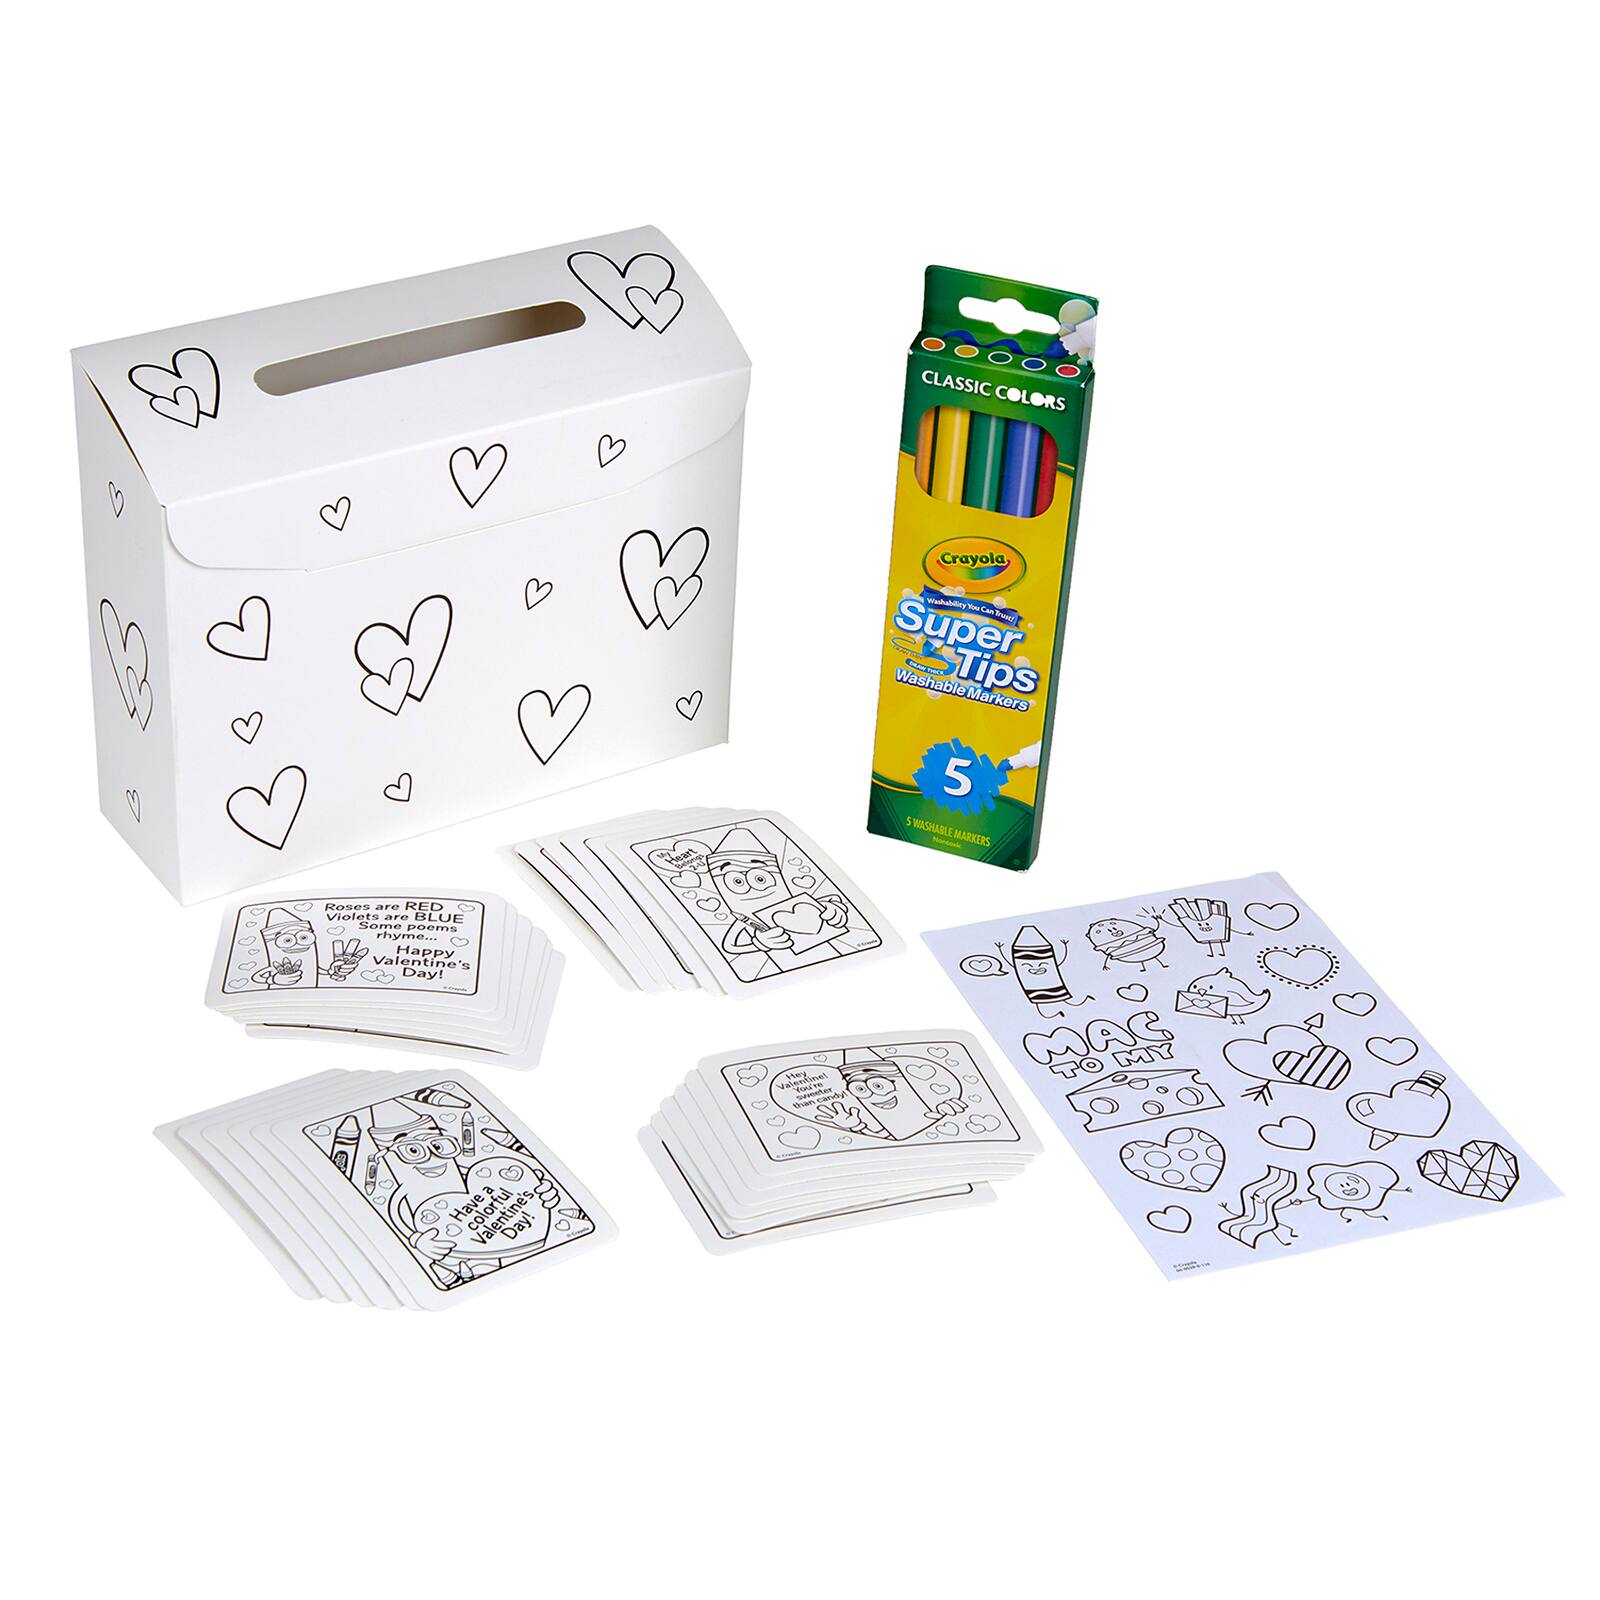 Crayola&#xAE; Valentine Mailbox Kit, 6ct.